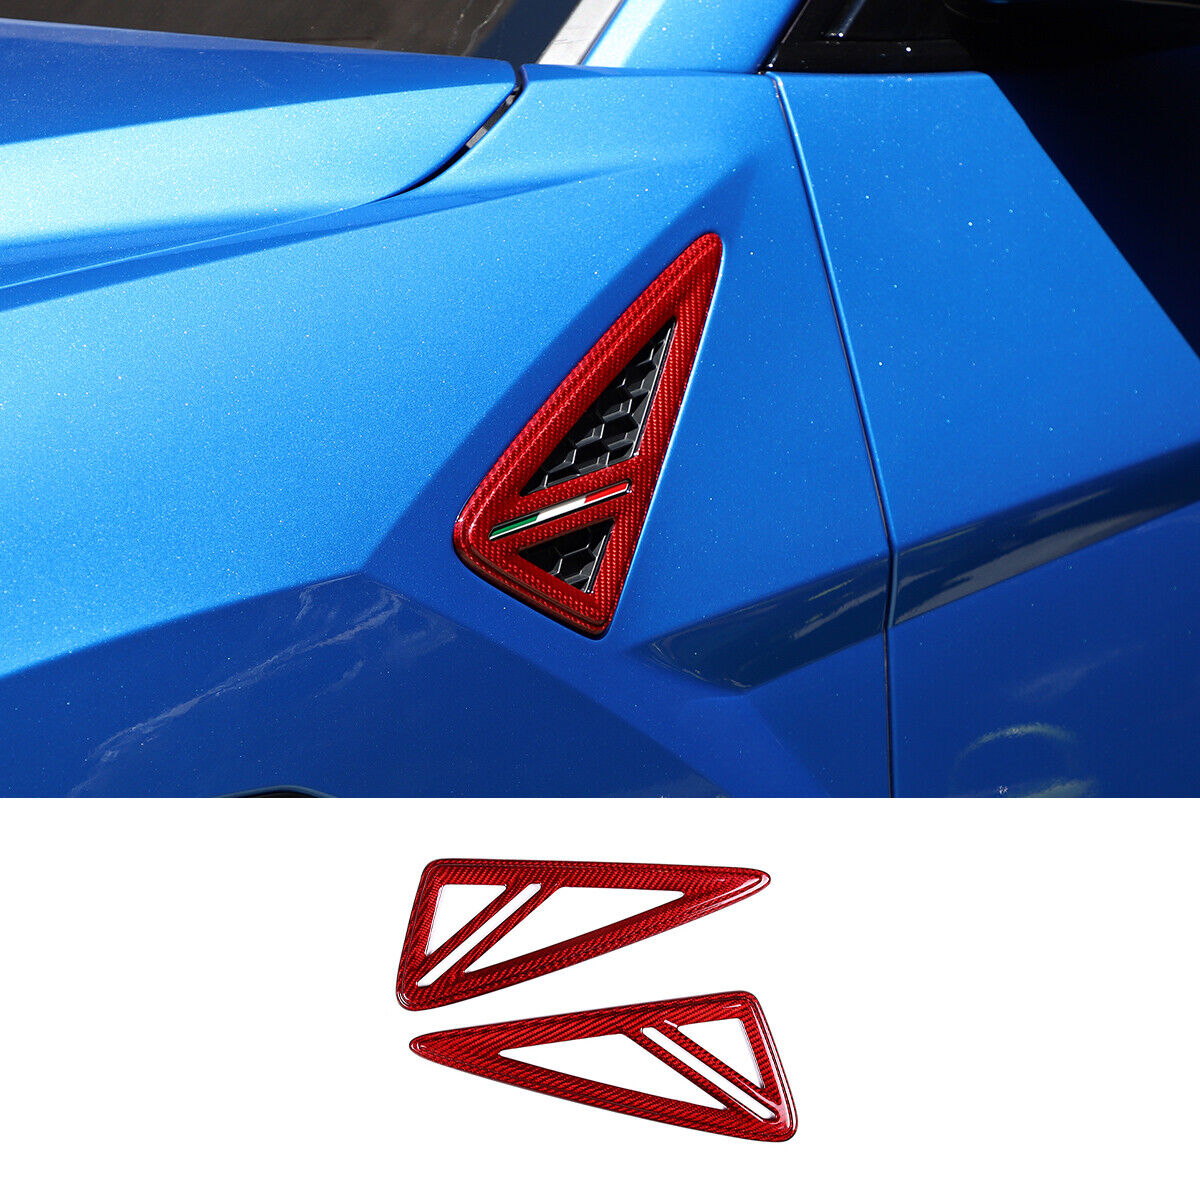 Red Carbon Fiber Side Body Fender Cover Air Vent Trim For Lamborghini URUS 18-21